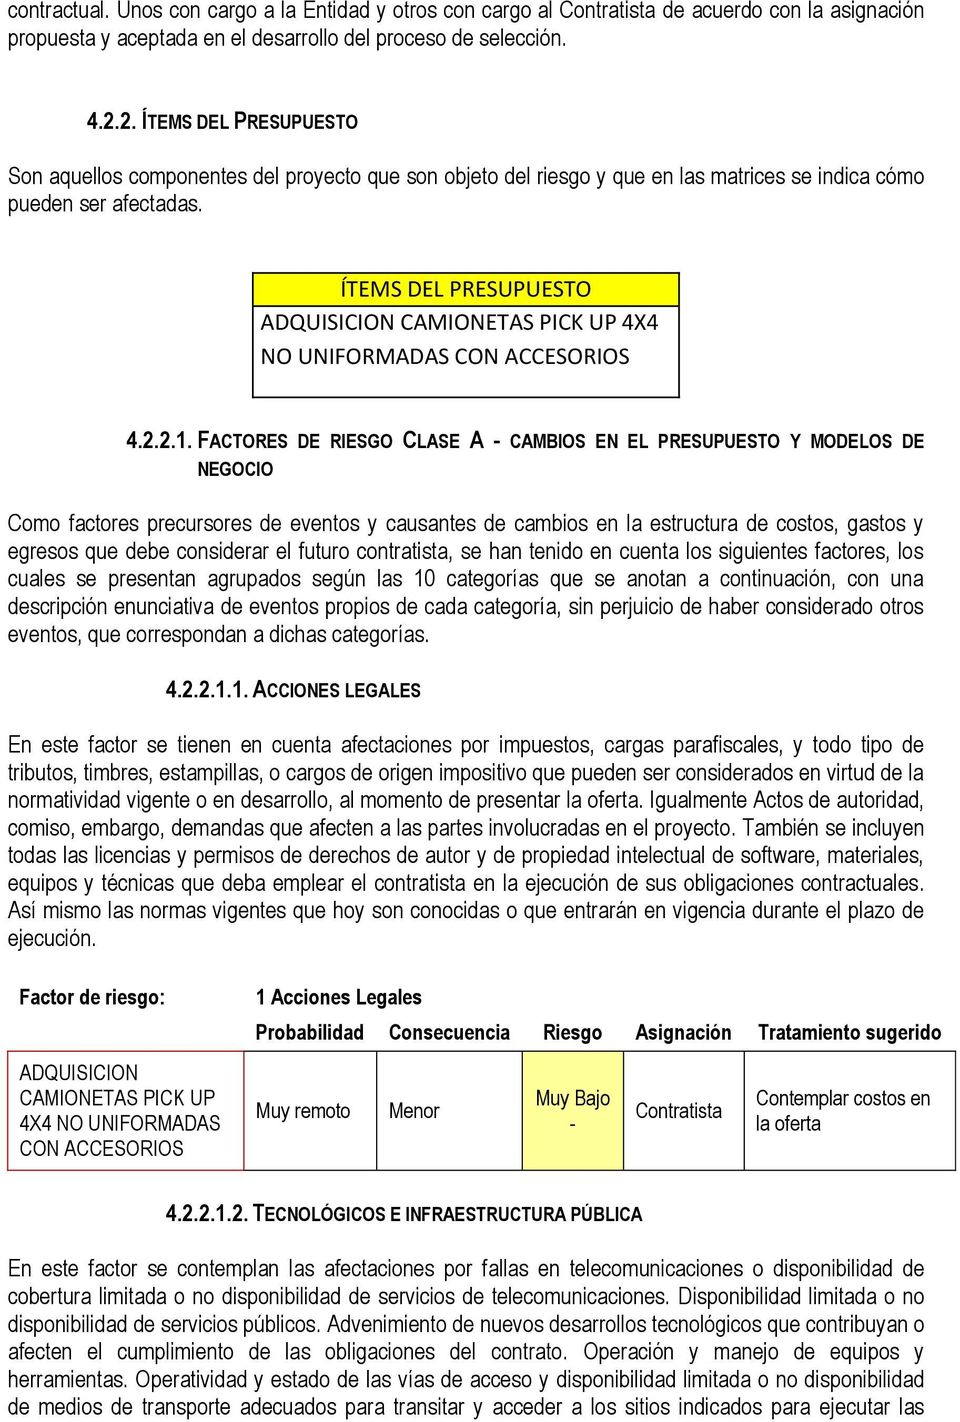 ÍTEMS DEL PRESUPUESTO CAMIONETAS PICK UP 4X4 NO UNIFORMADAS 4.2.2.1.